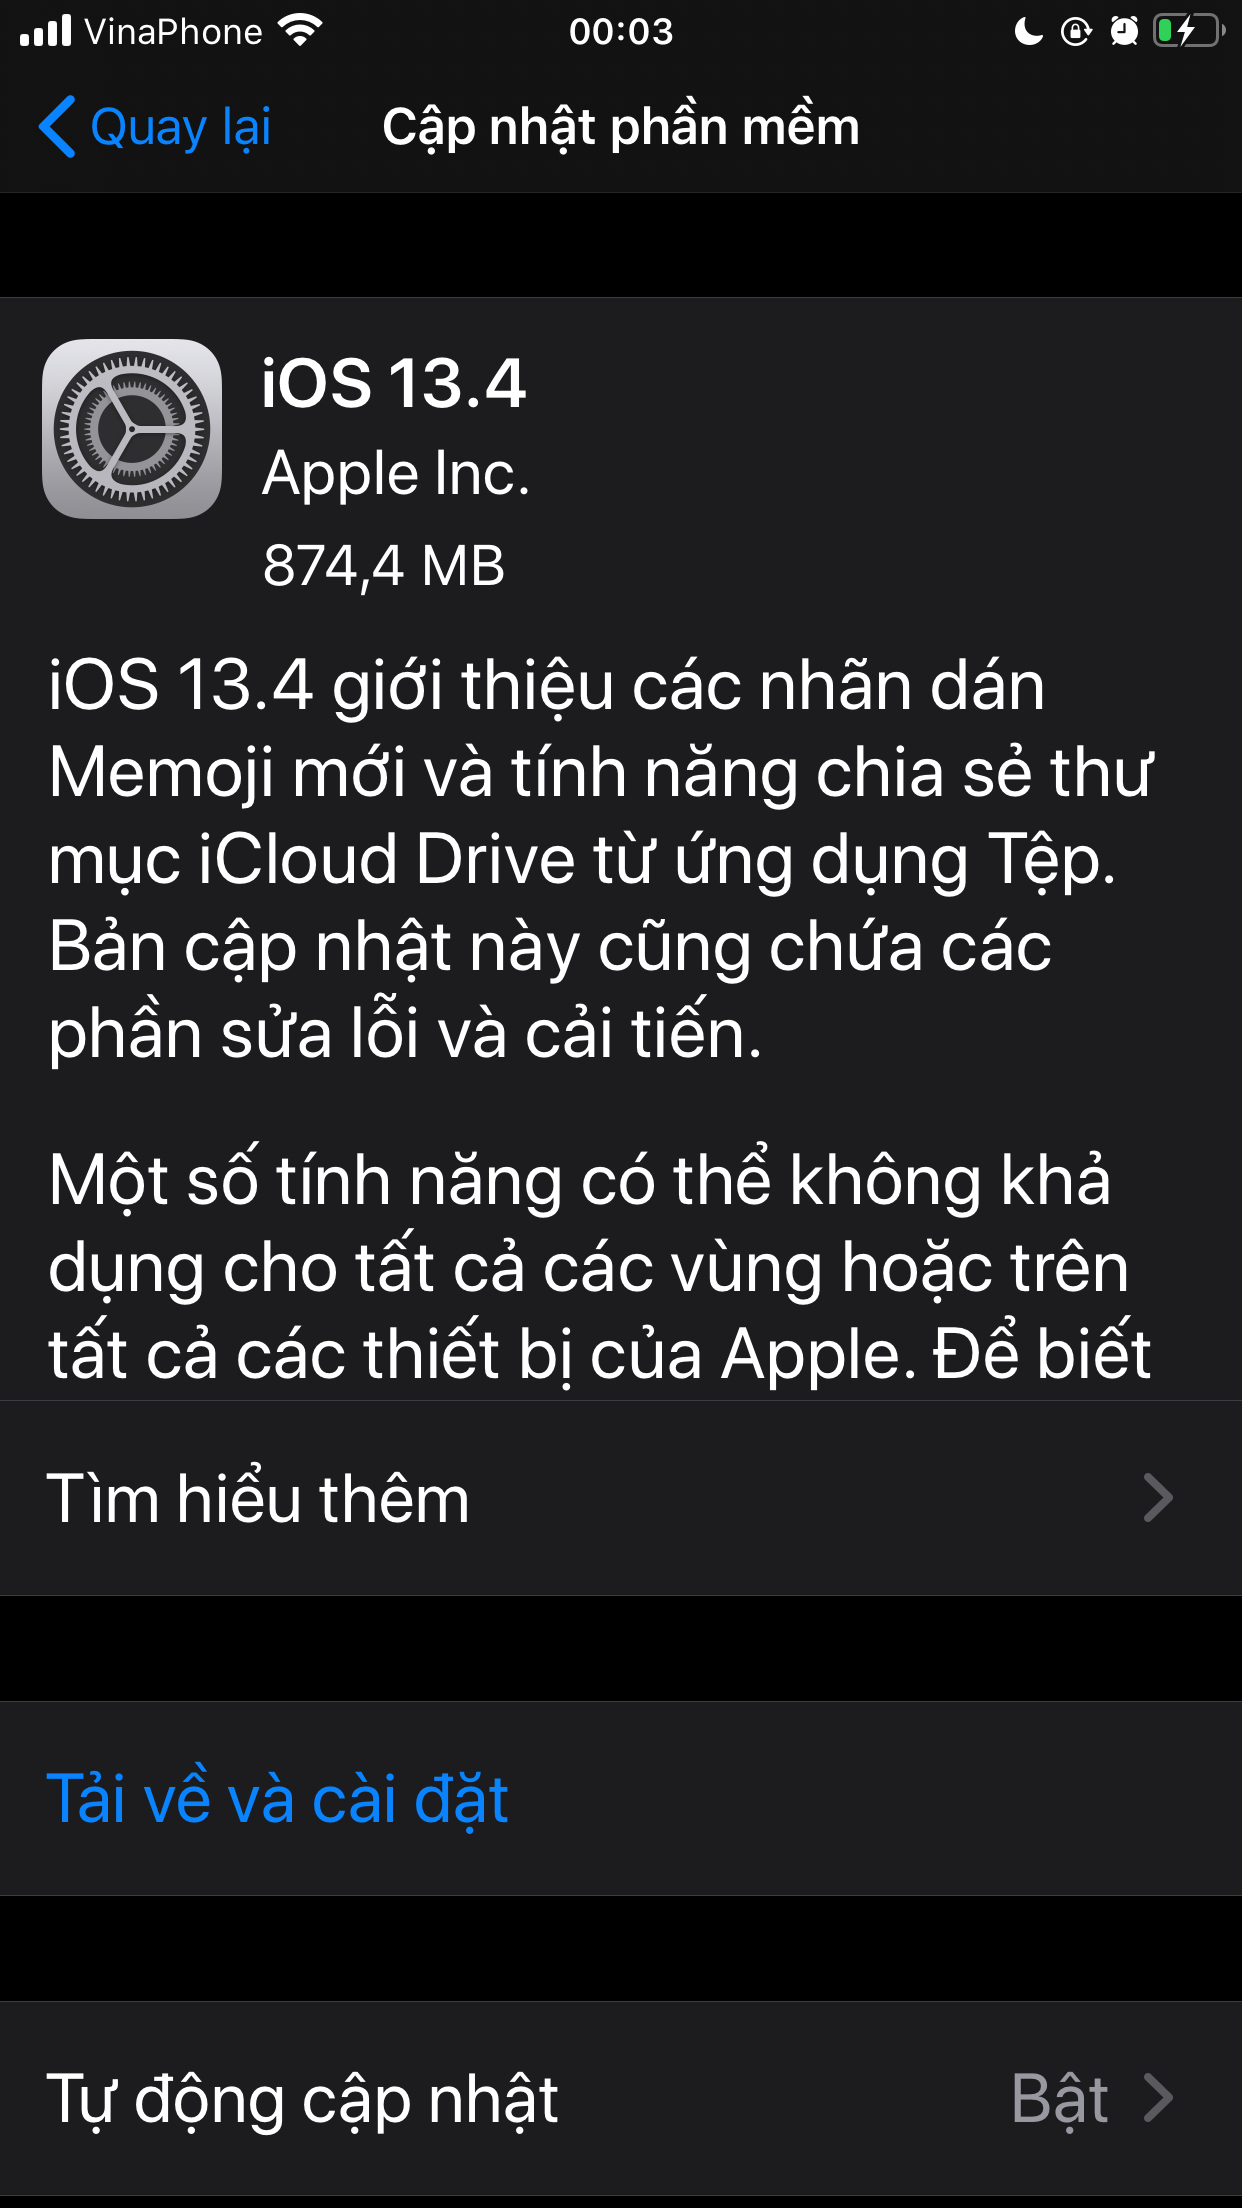 iOS 13.4 chính thức. Lên nào anh em !